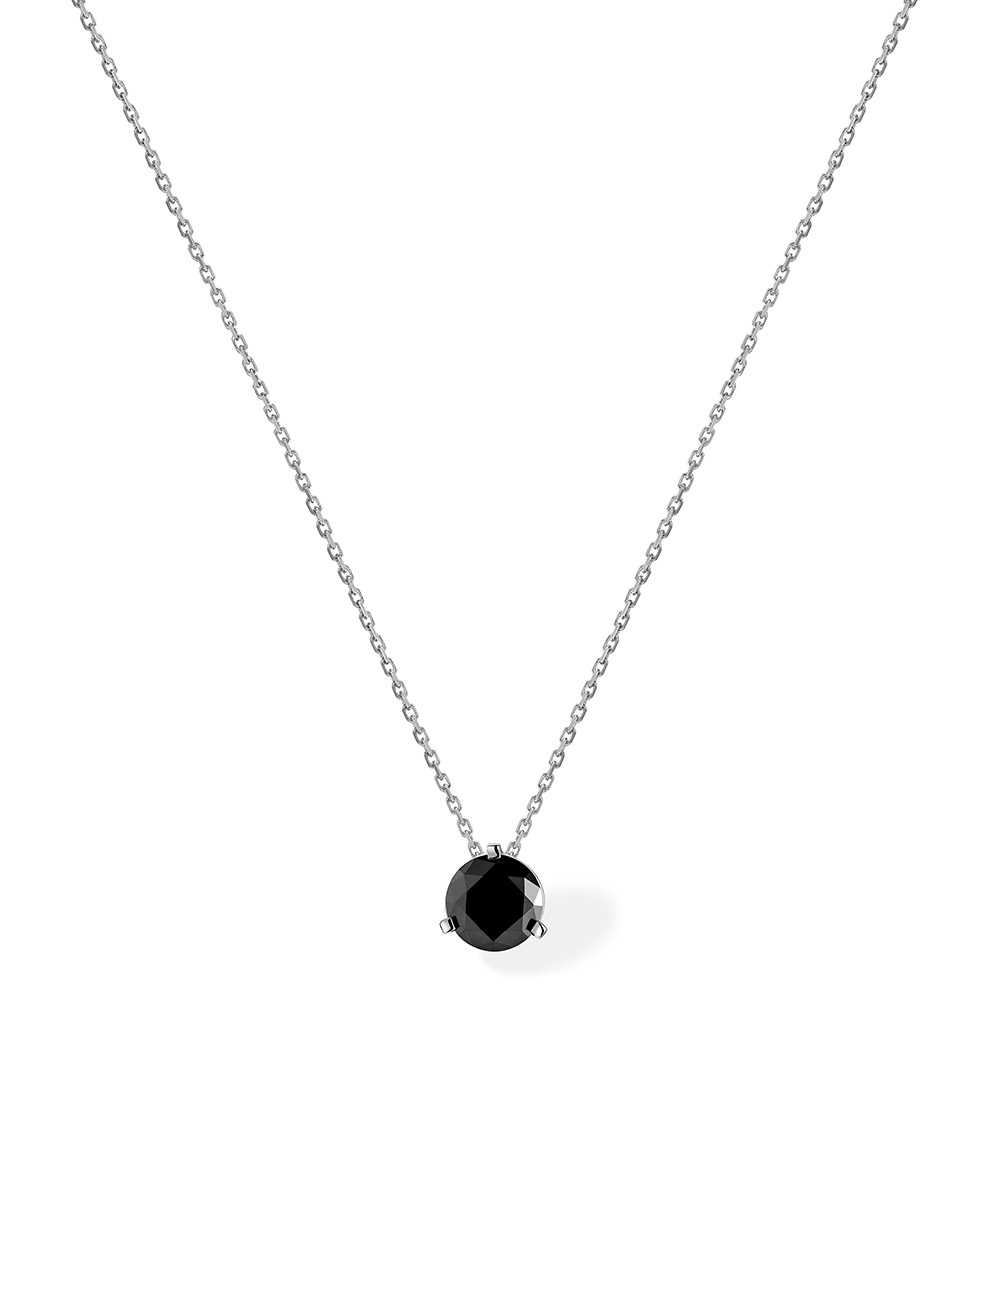 Luxe subtil : Pendentif Solitaire Diamant Noir pour Femme et Homme en Or Blanc 18 Carats